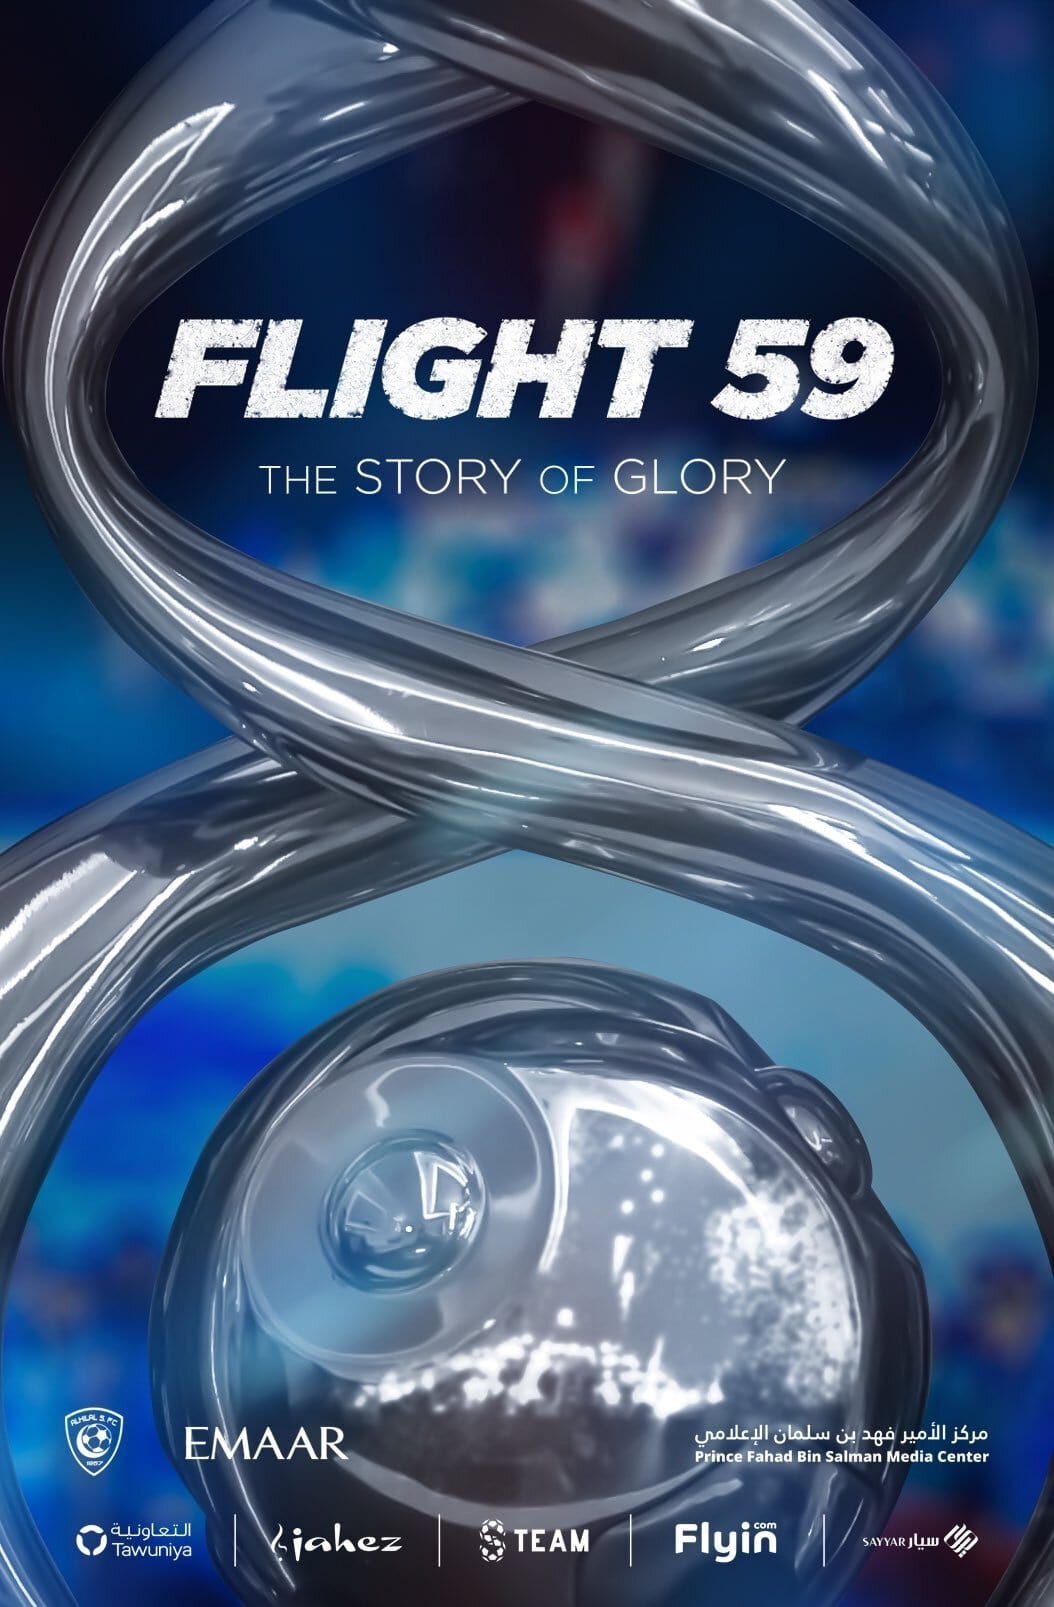 FLIGHT59